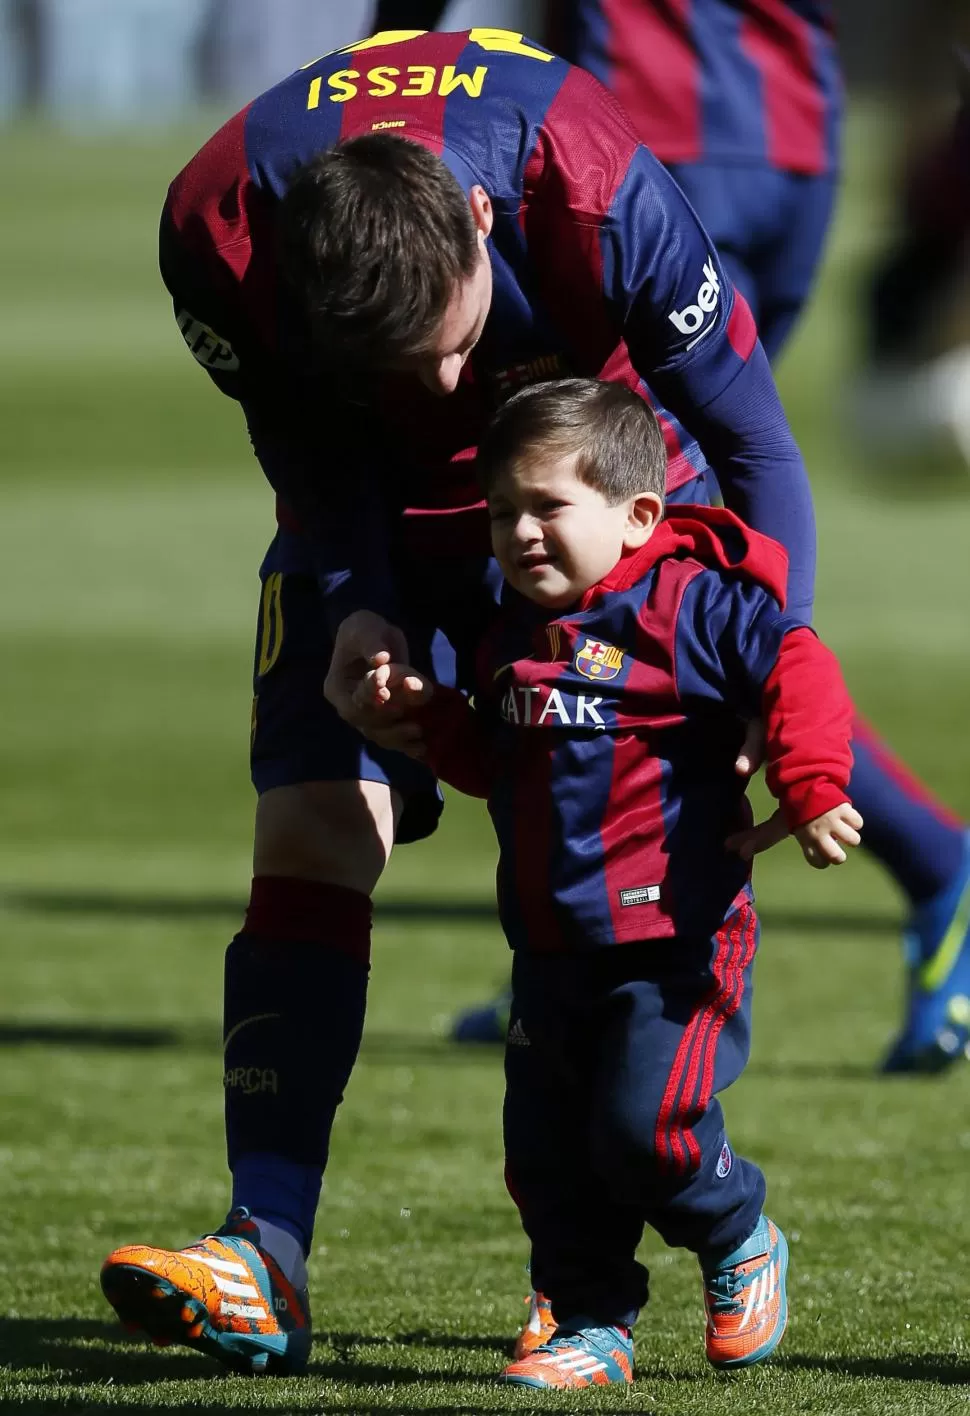 PEDIDO. La prensa catalana quieren un momumento para Lionel Messi. reuters